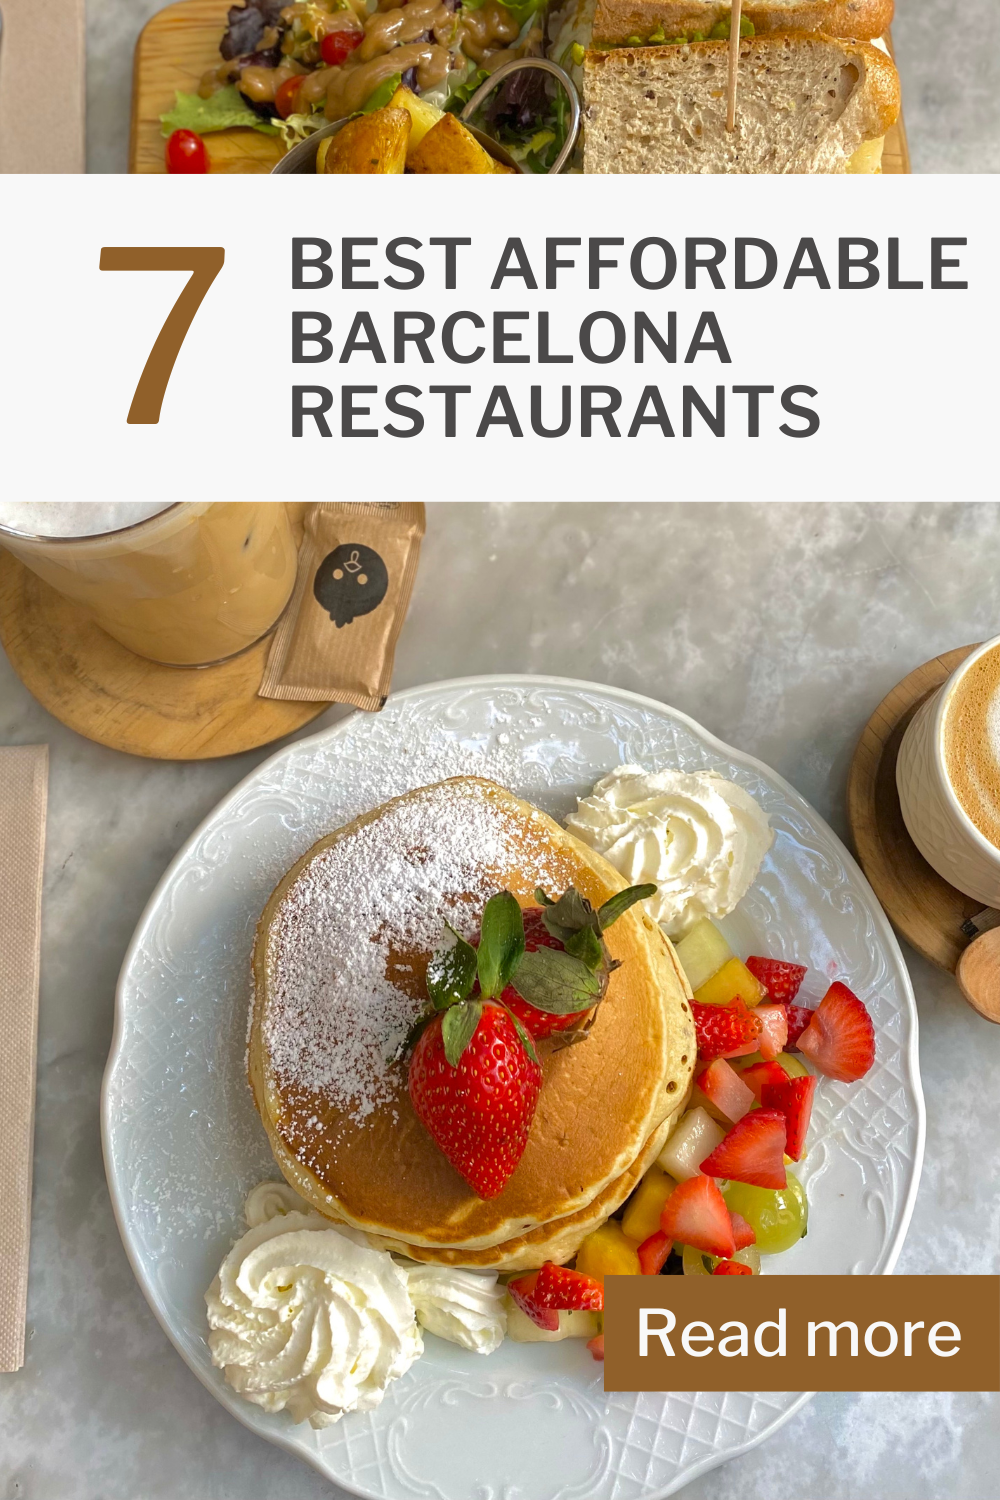 Best Affordable Barcelona Restaurants